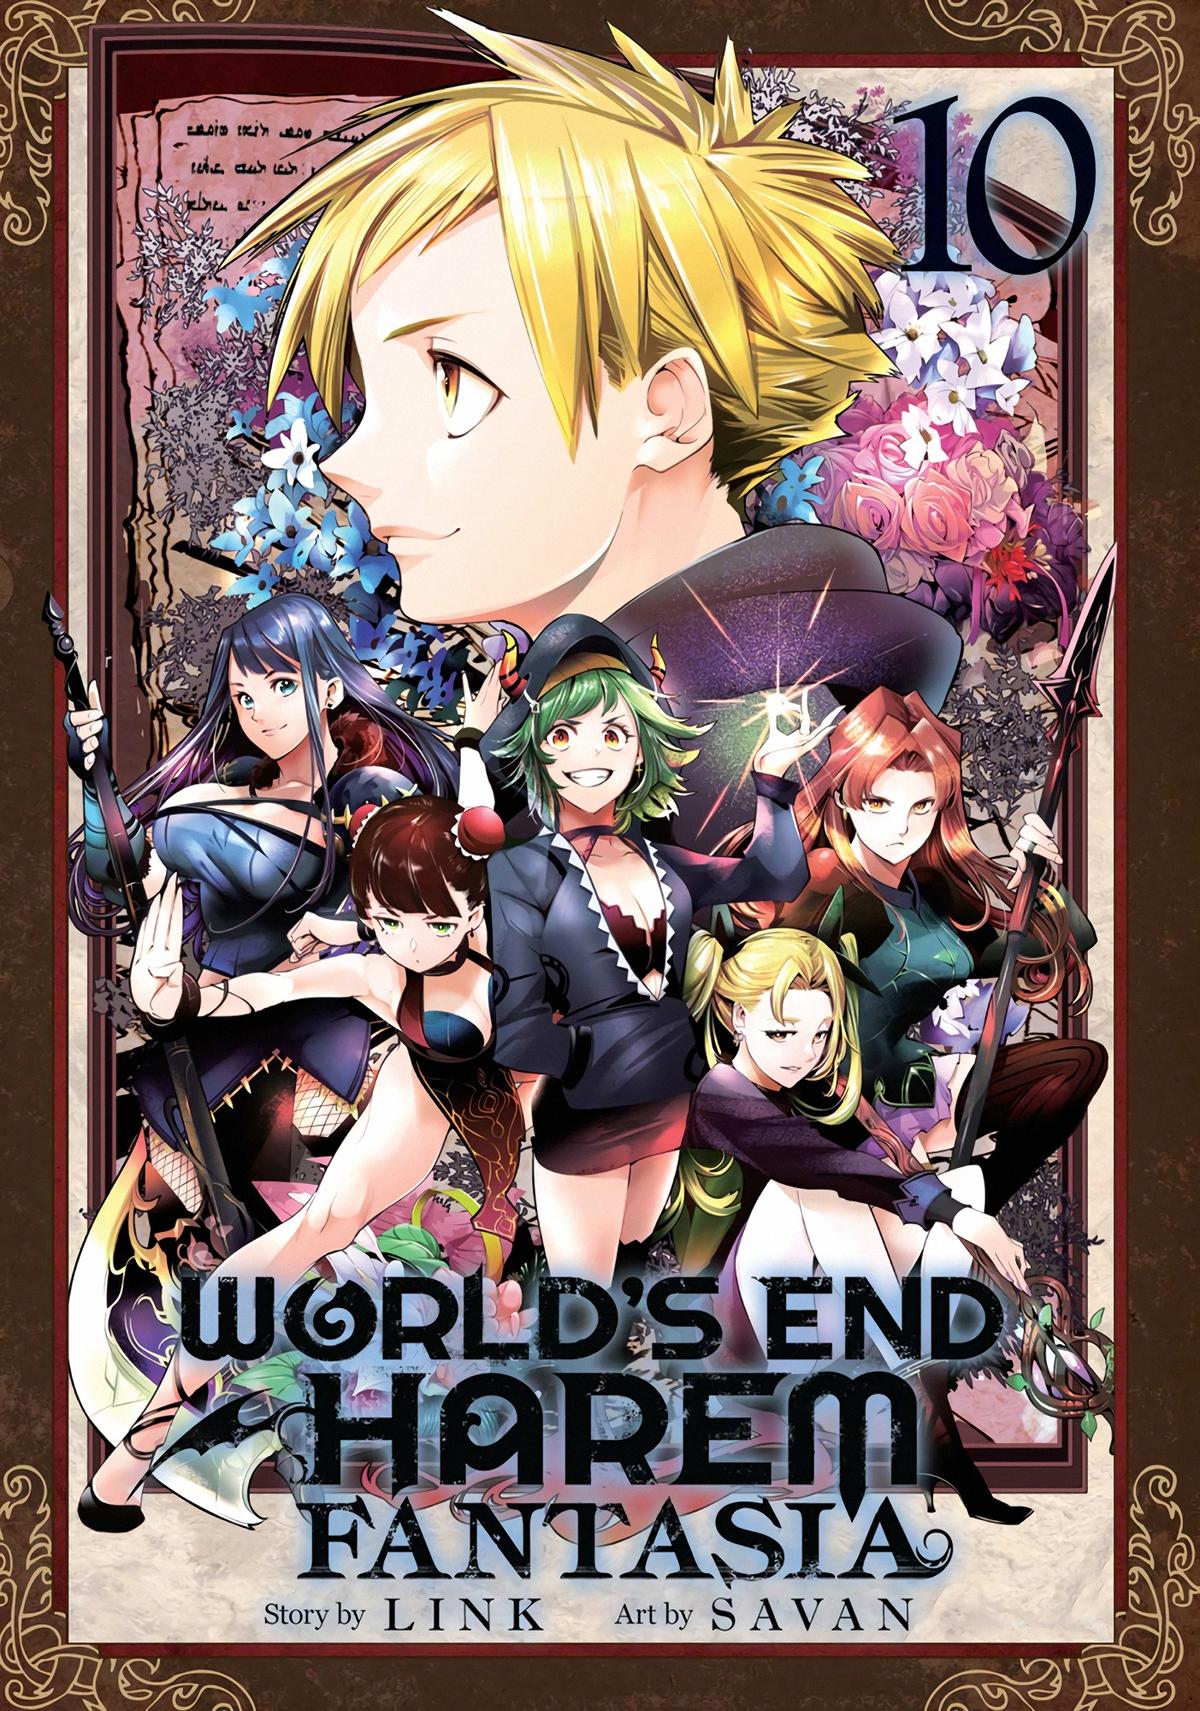 World's End Harem - Fantasia - Page 2